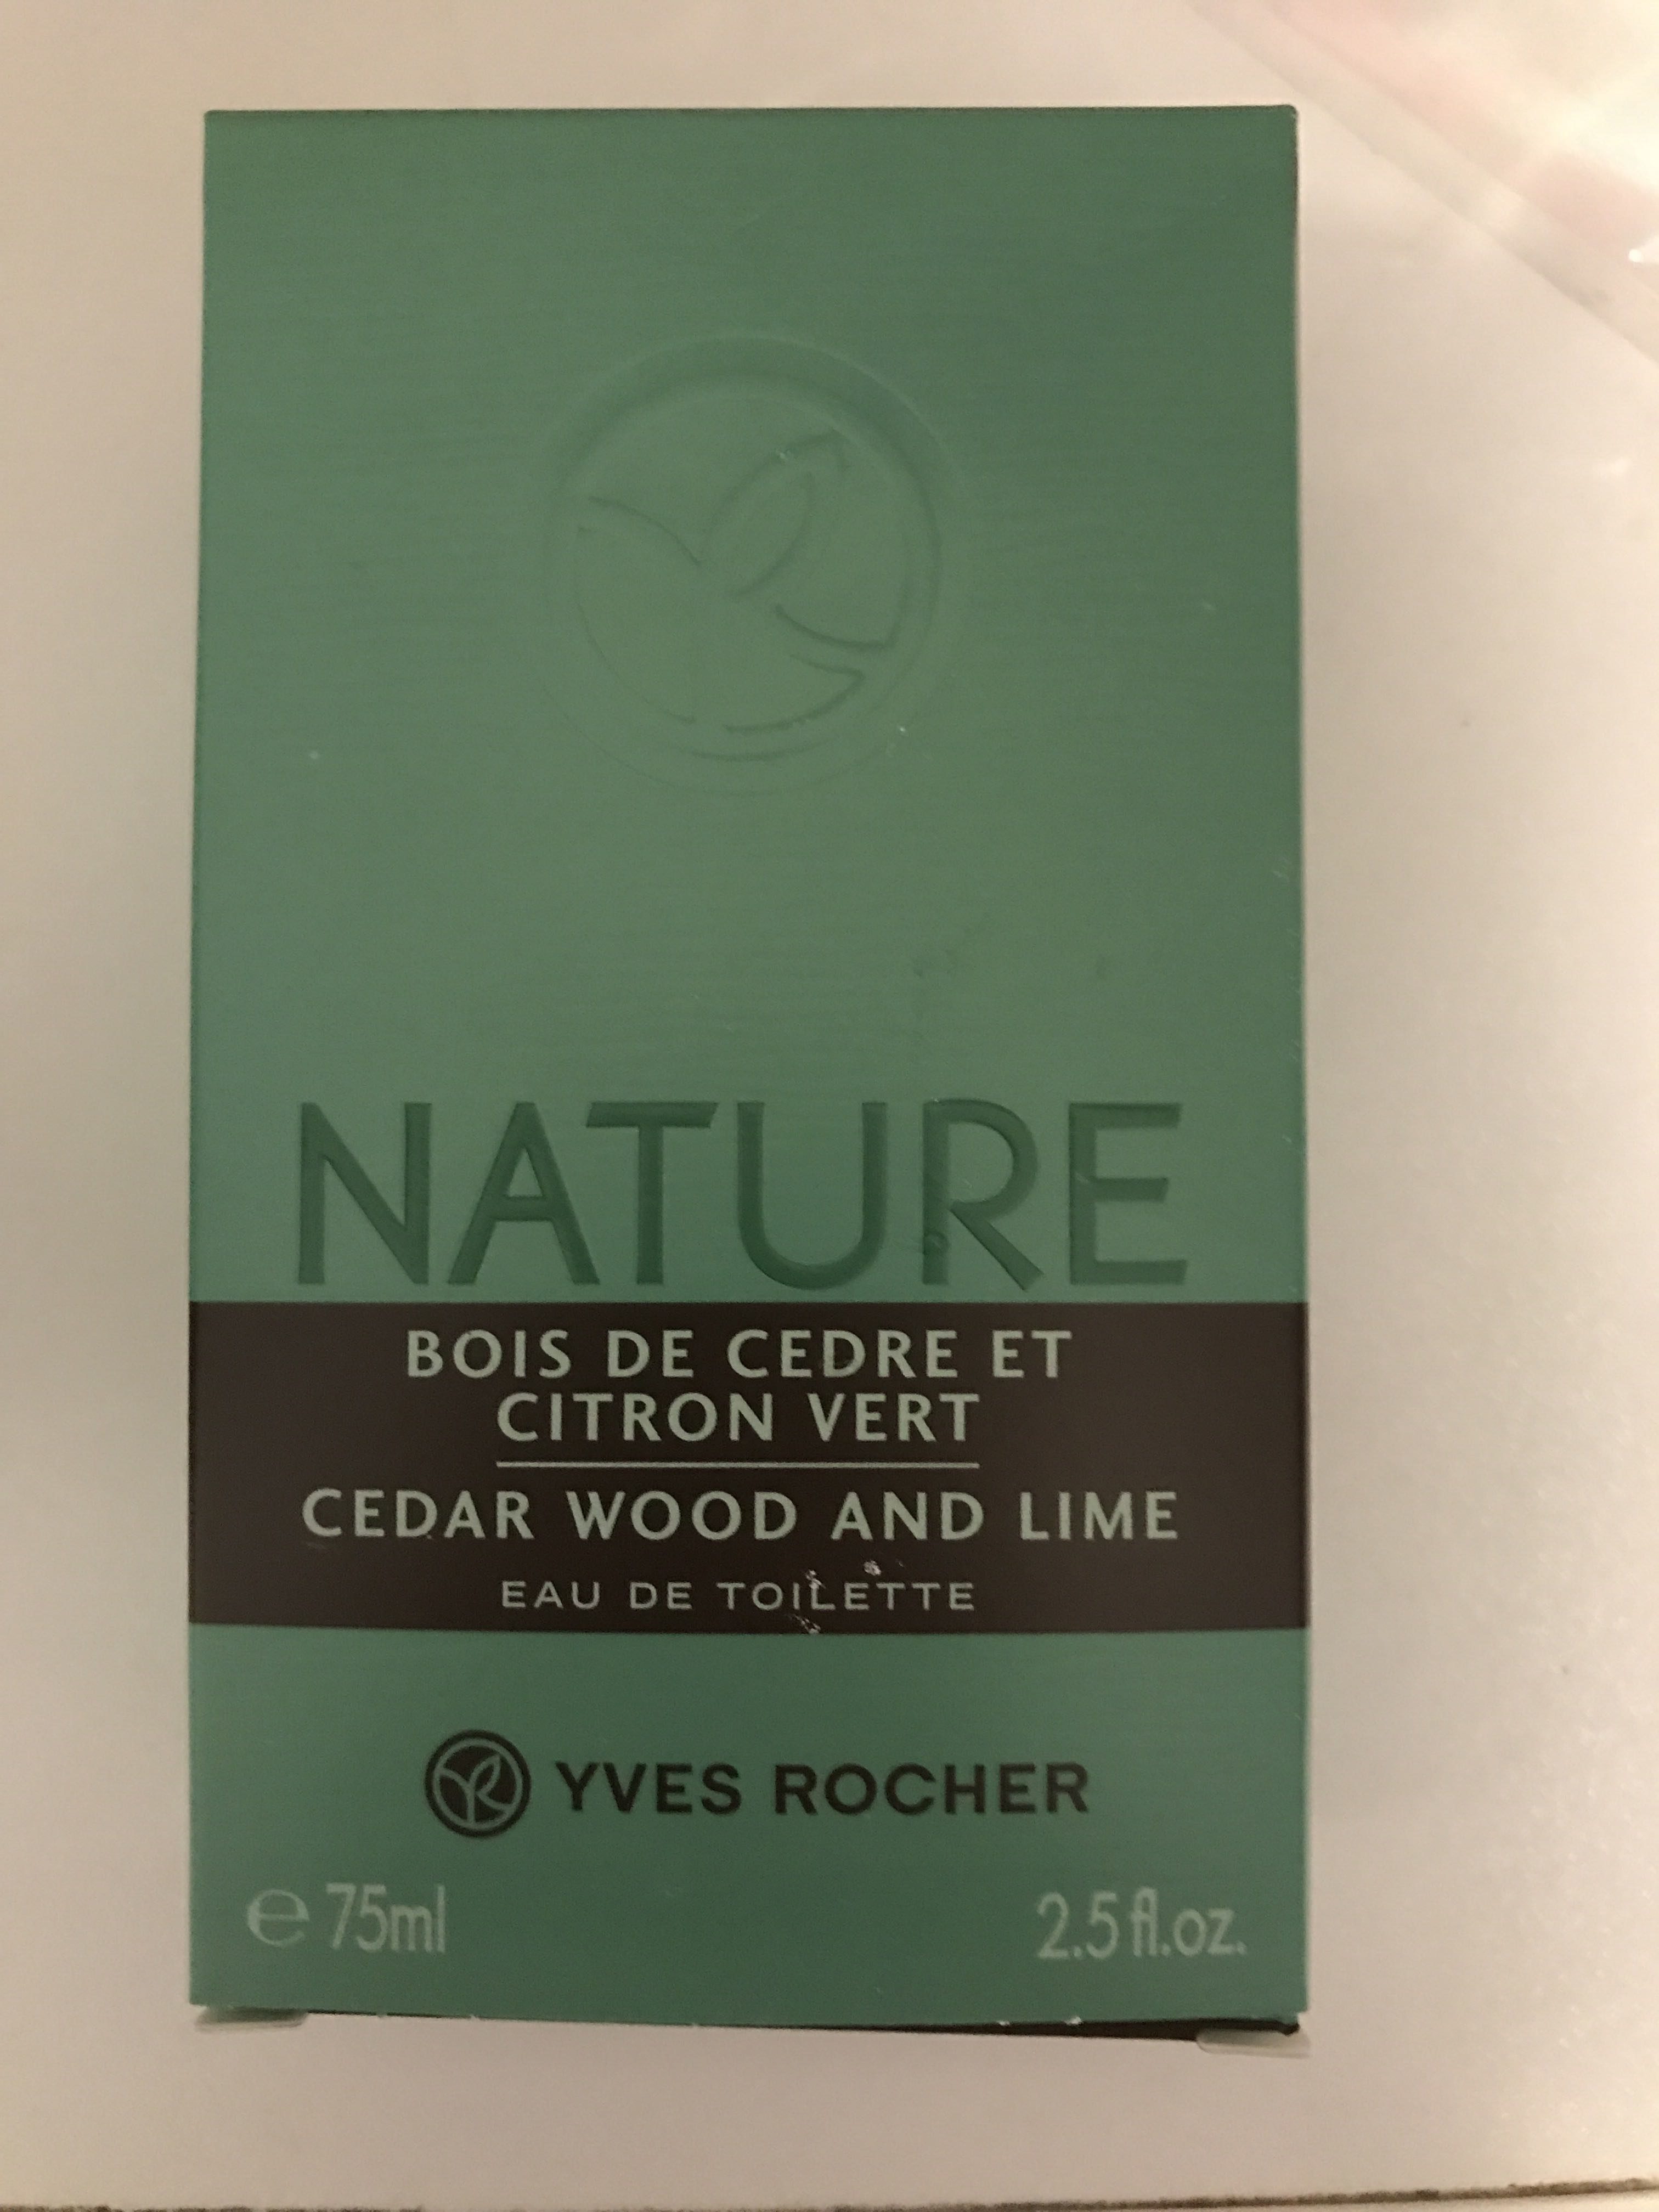 Nature Bois de cèdre et Citron vert - Produkt - fr